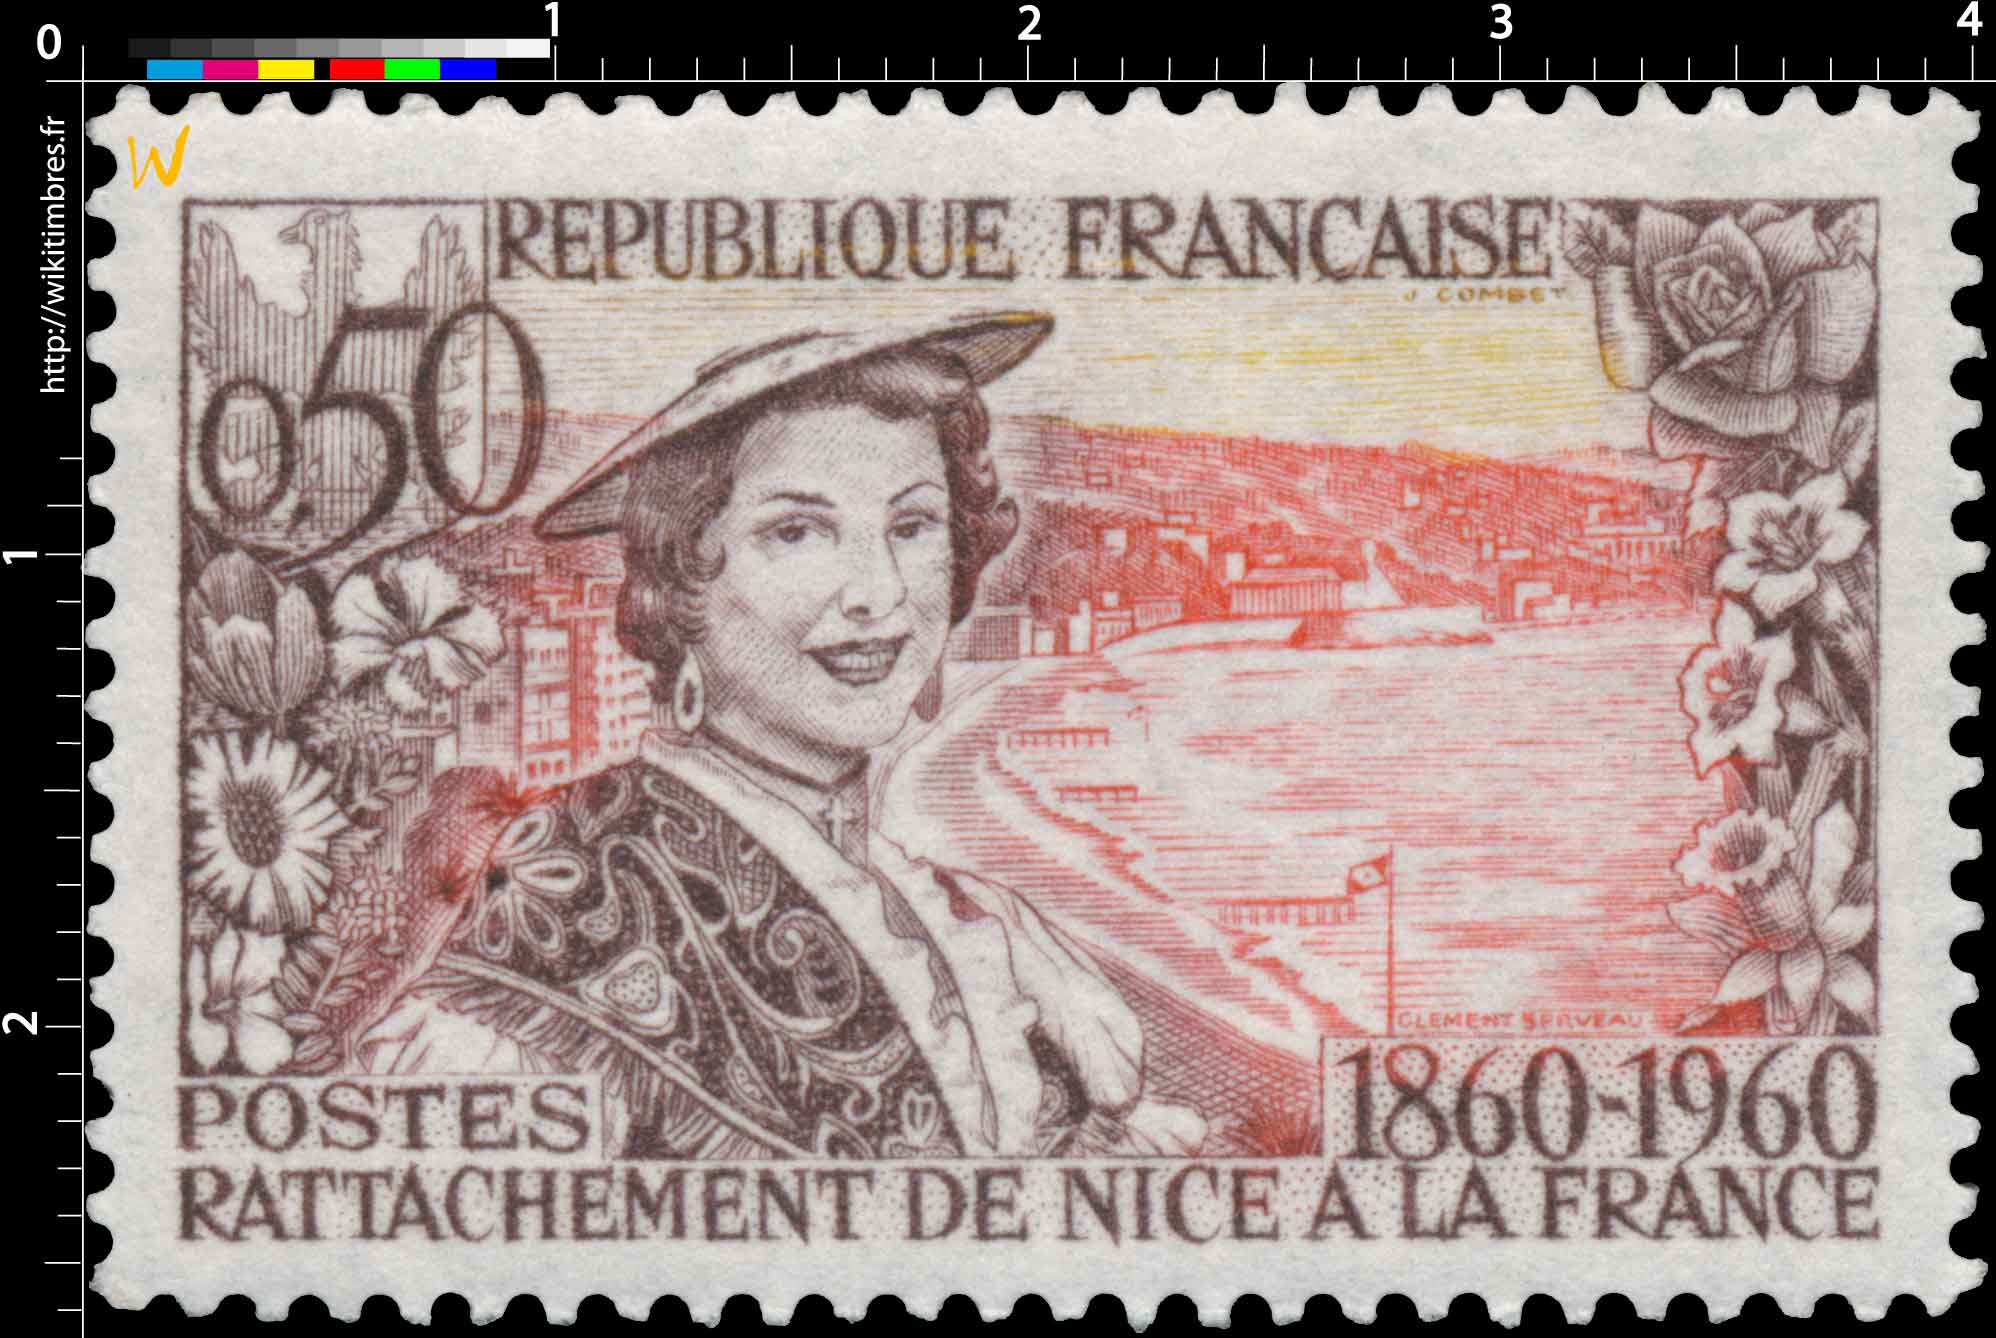 RATTACHEMENT DE NICE A LA FRANCE 1860-1960